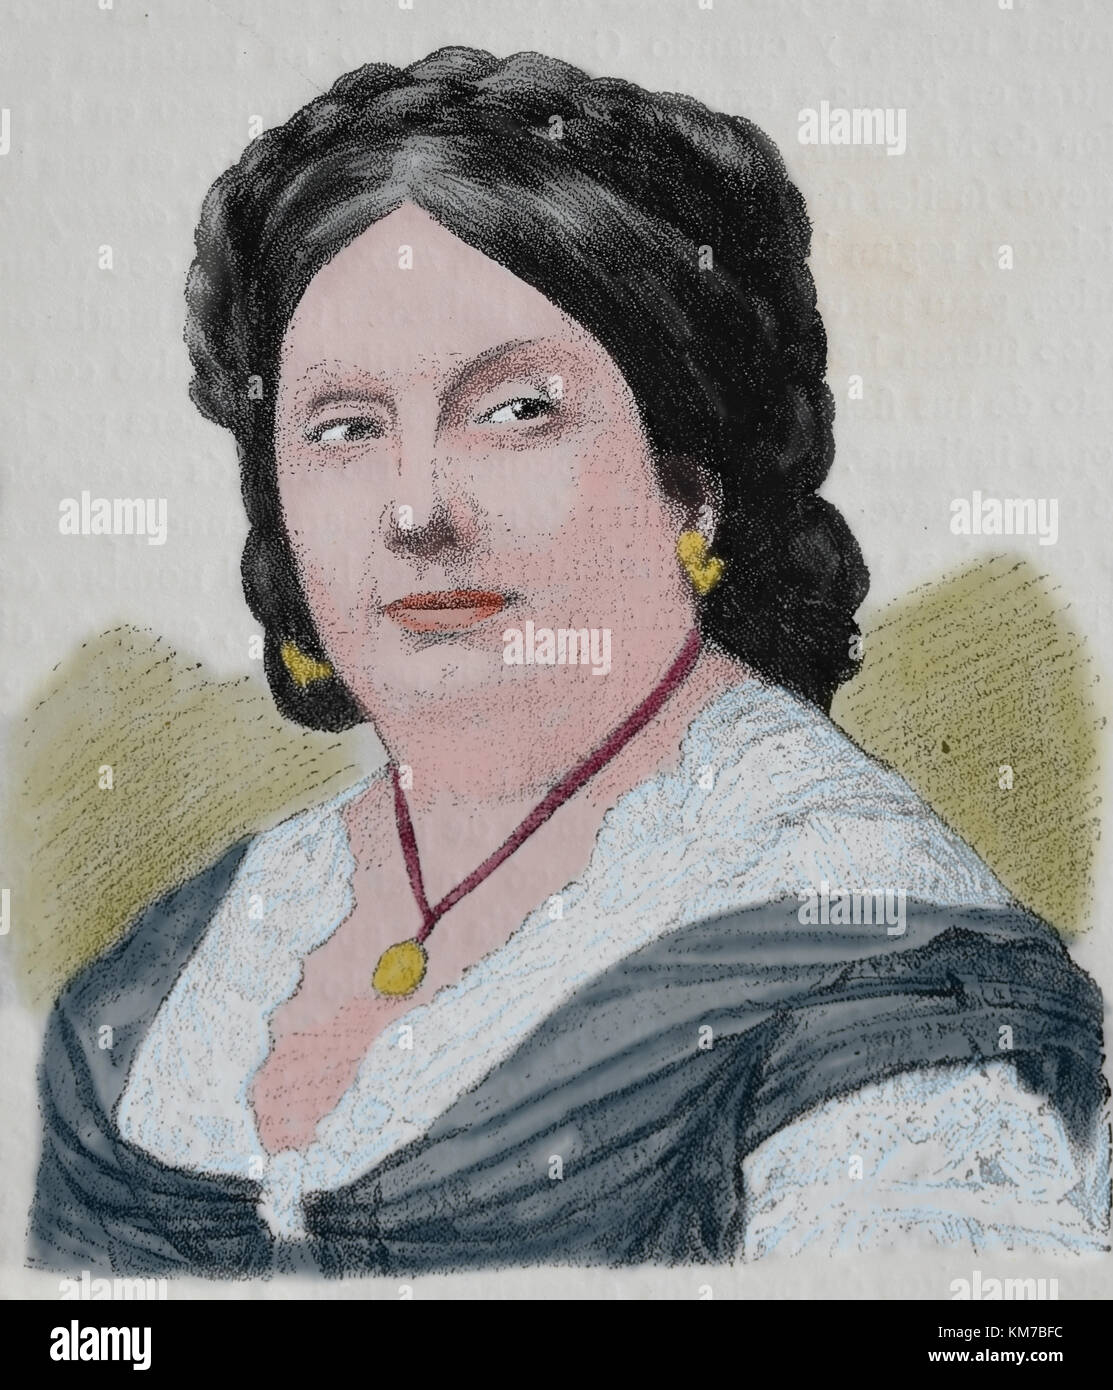 Isabelle II d'Espagne (1830-1904). La reine d'Espagne de 1833-1868. la gravure, 1883. Banque D'Images